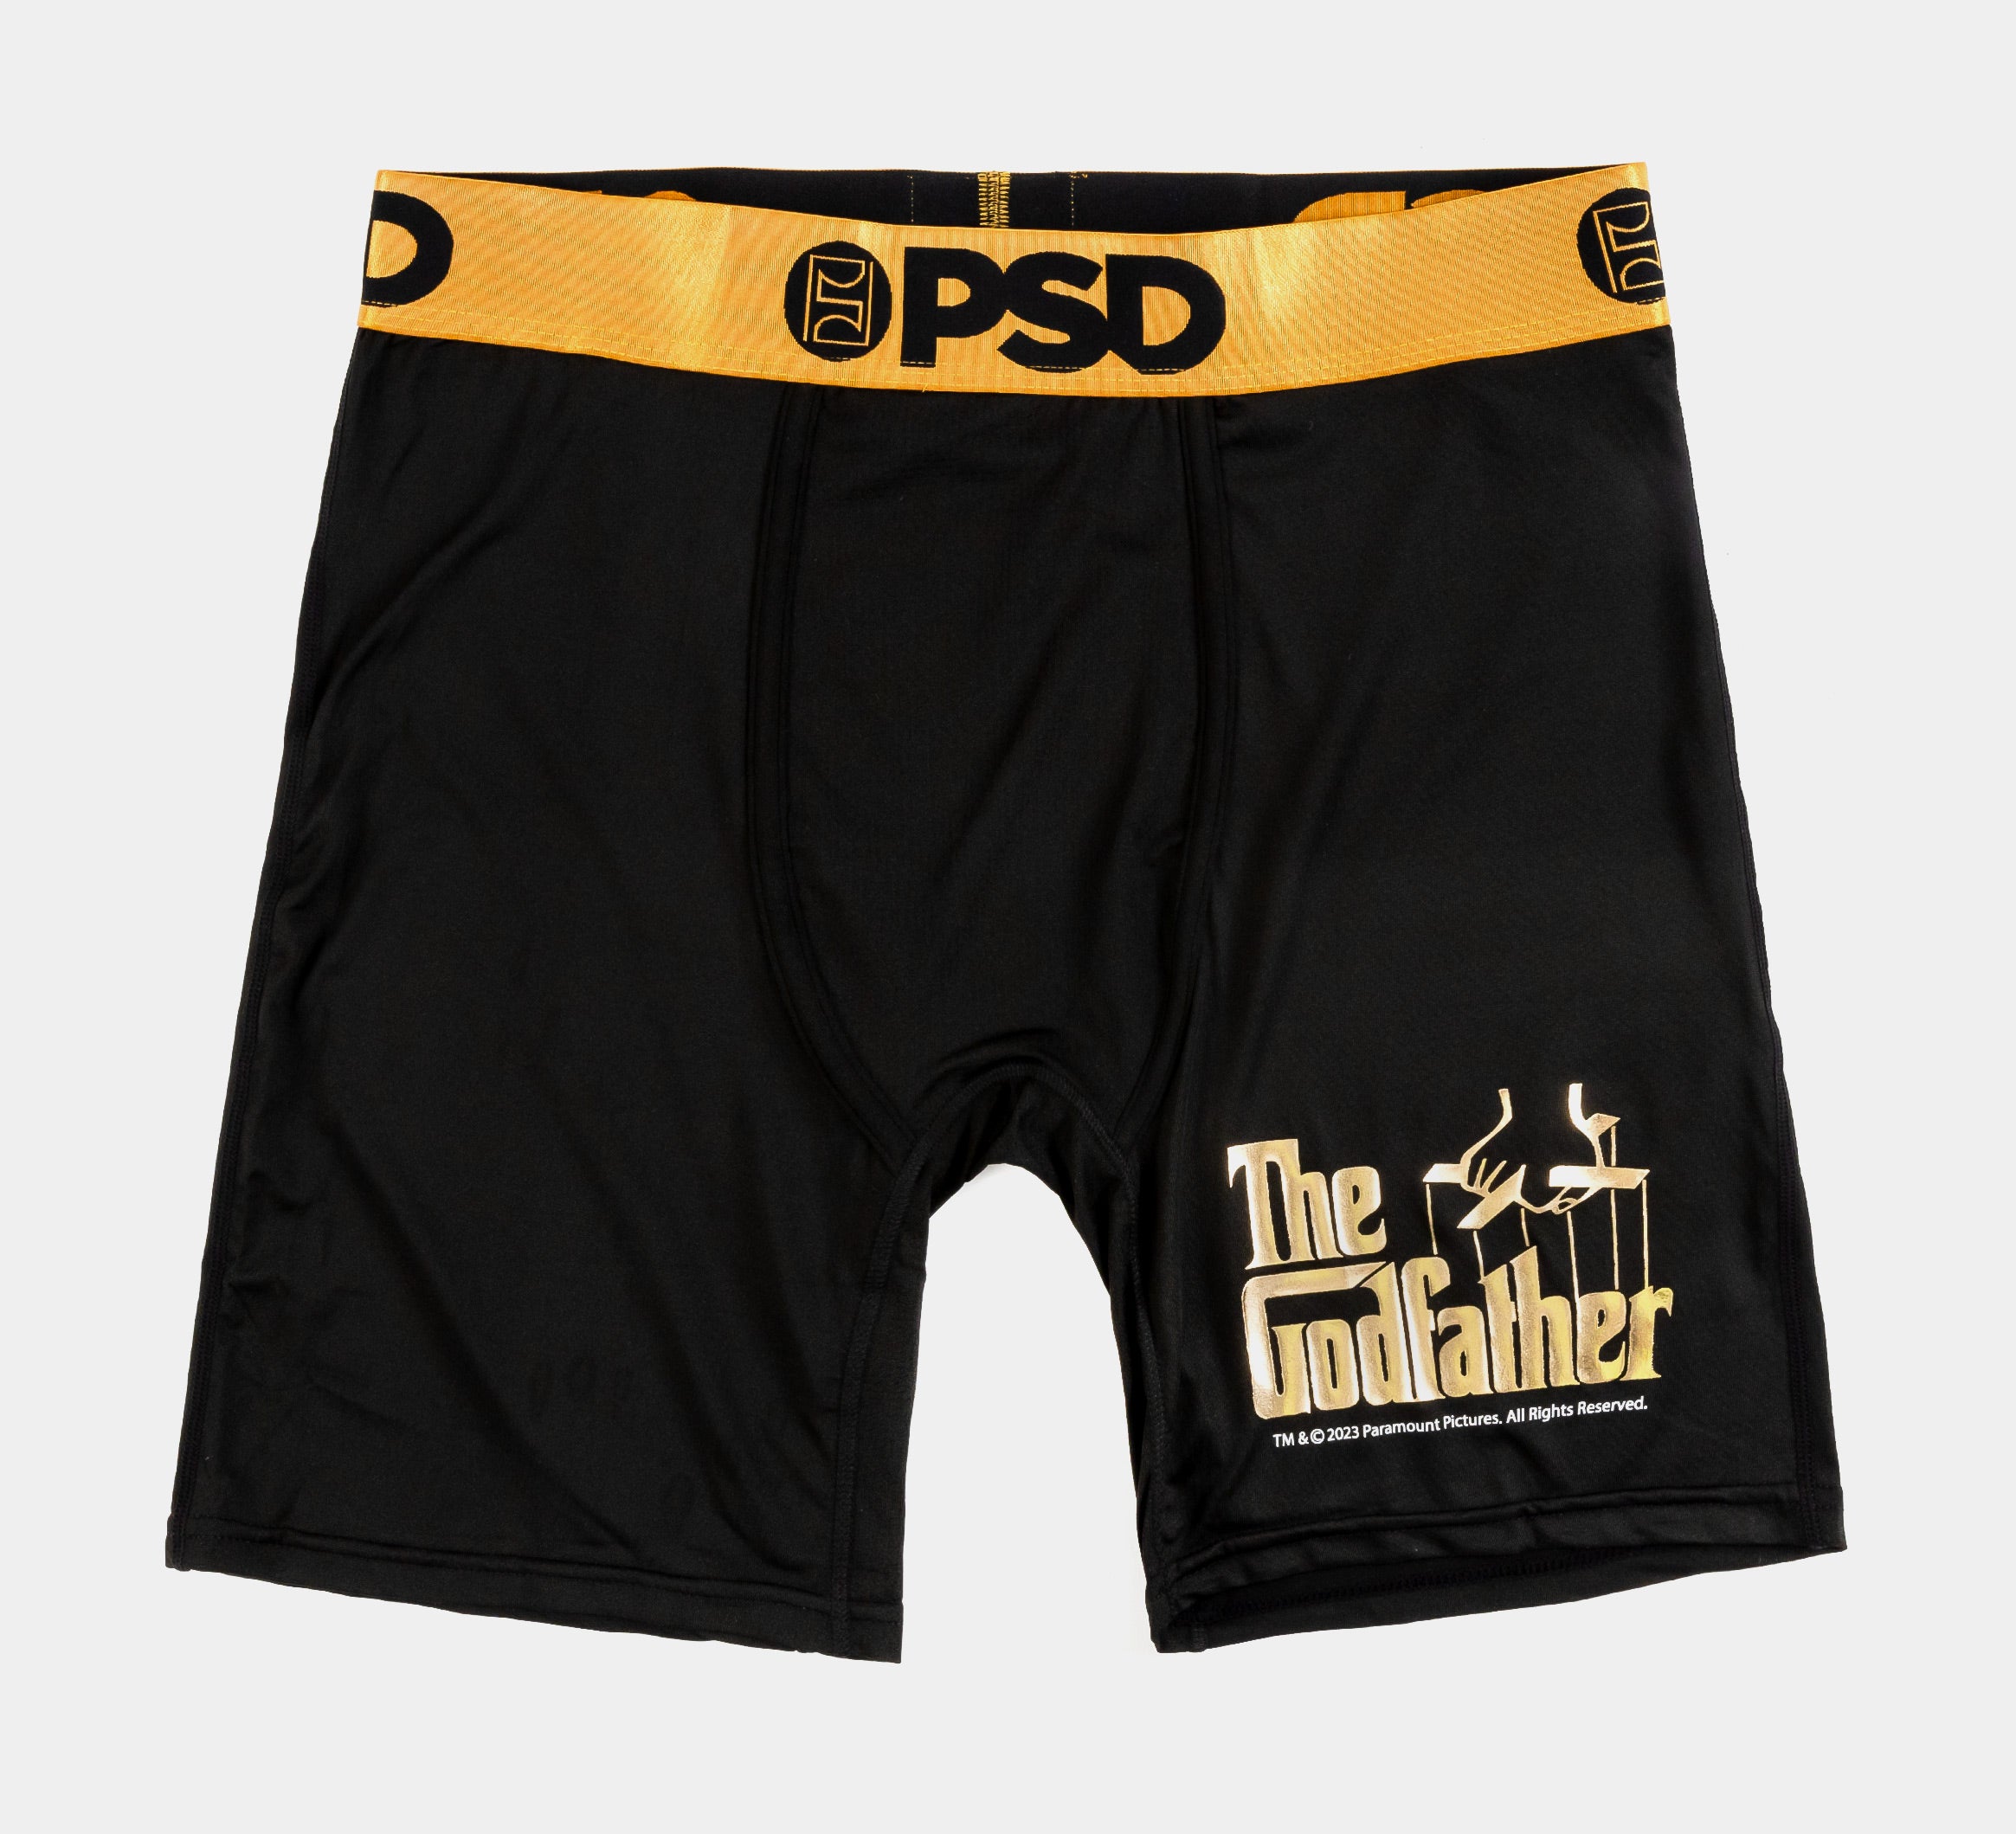 PSD Men's Underwear